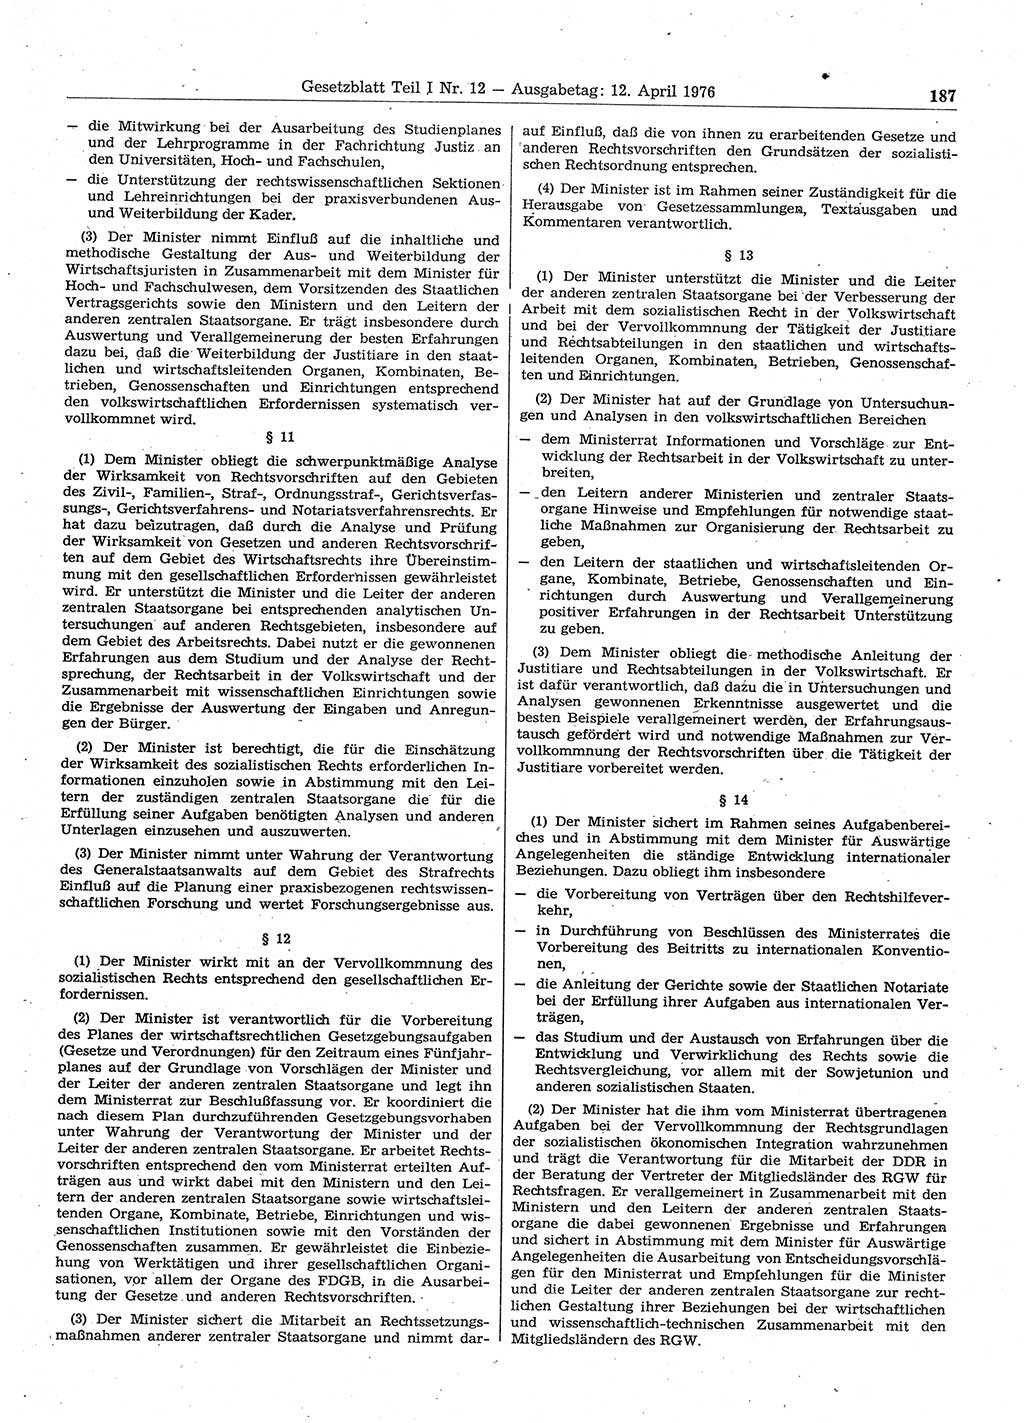 Gesetzblatt (GBl.) der Deutschen Demokratischen Republik (DDR) Teil Ⅰ 1976, Seite 187 (GBl. DDR Ⅰ 1976, S. 187)